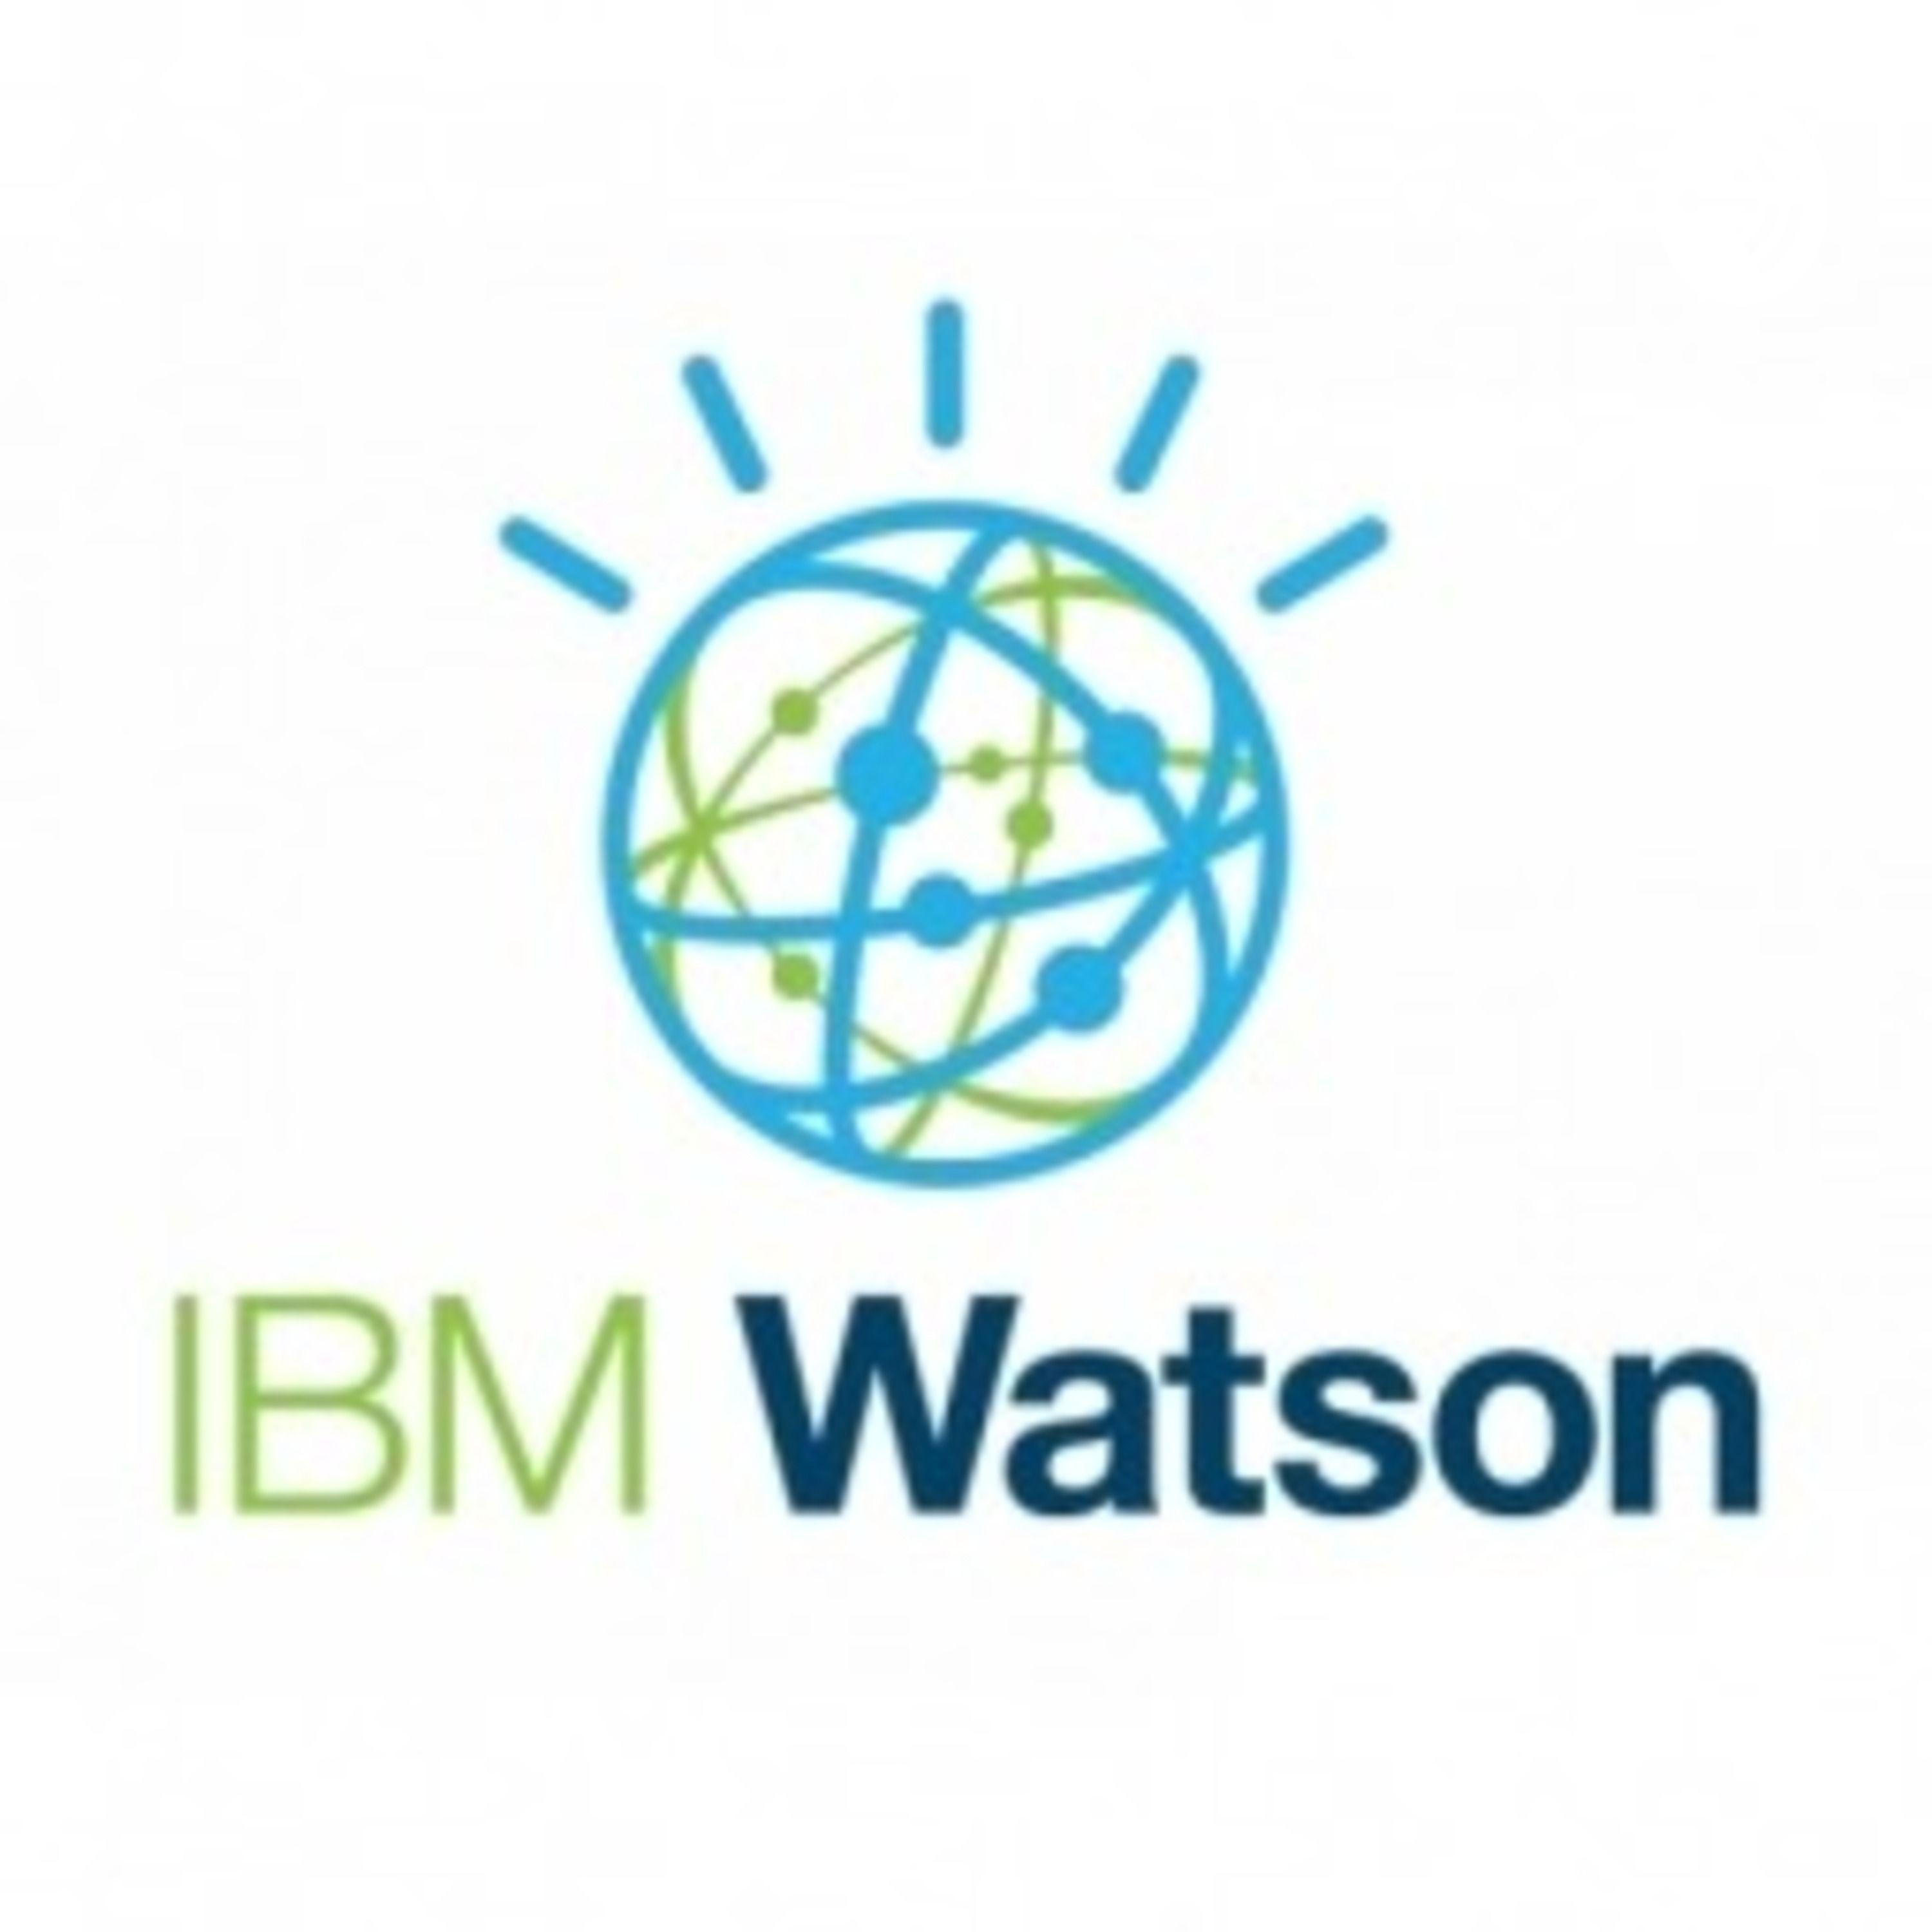 Use IBM Watson Logo - IBM Watson | Listen via Stitcher Radio On Demand